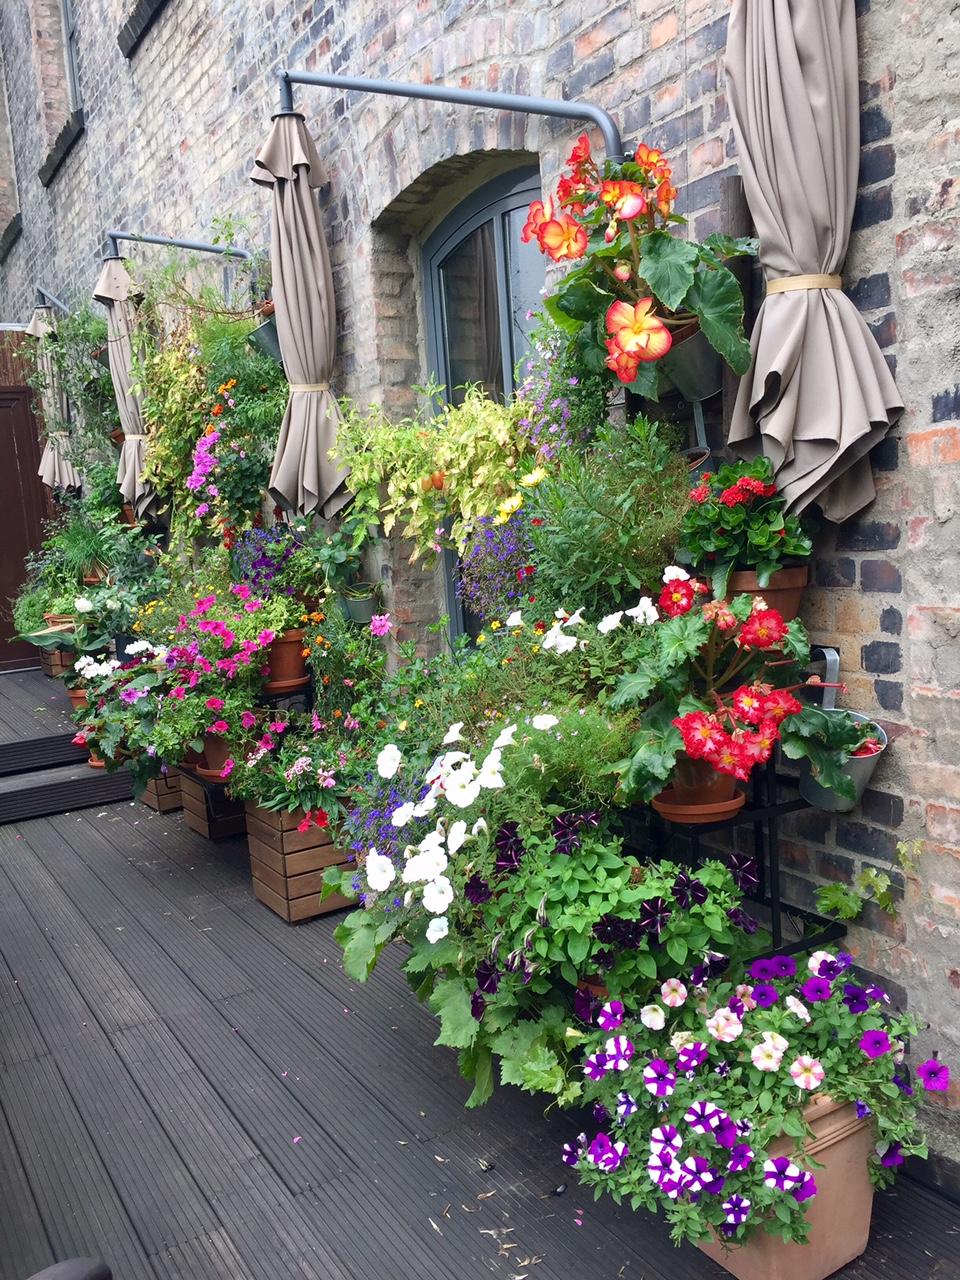 Terrassengoals - wenigstens musste man diesen Sommer nicht viel gießen  #farbenmix #flowerpower #blumen #balkon